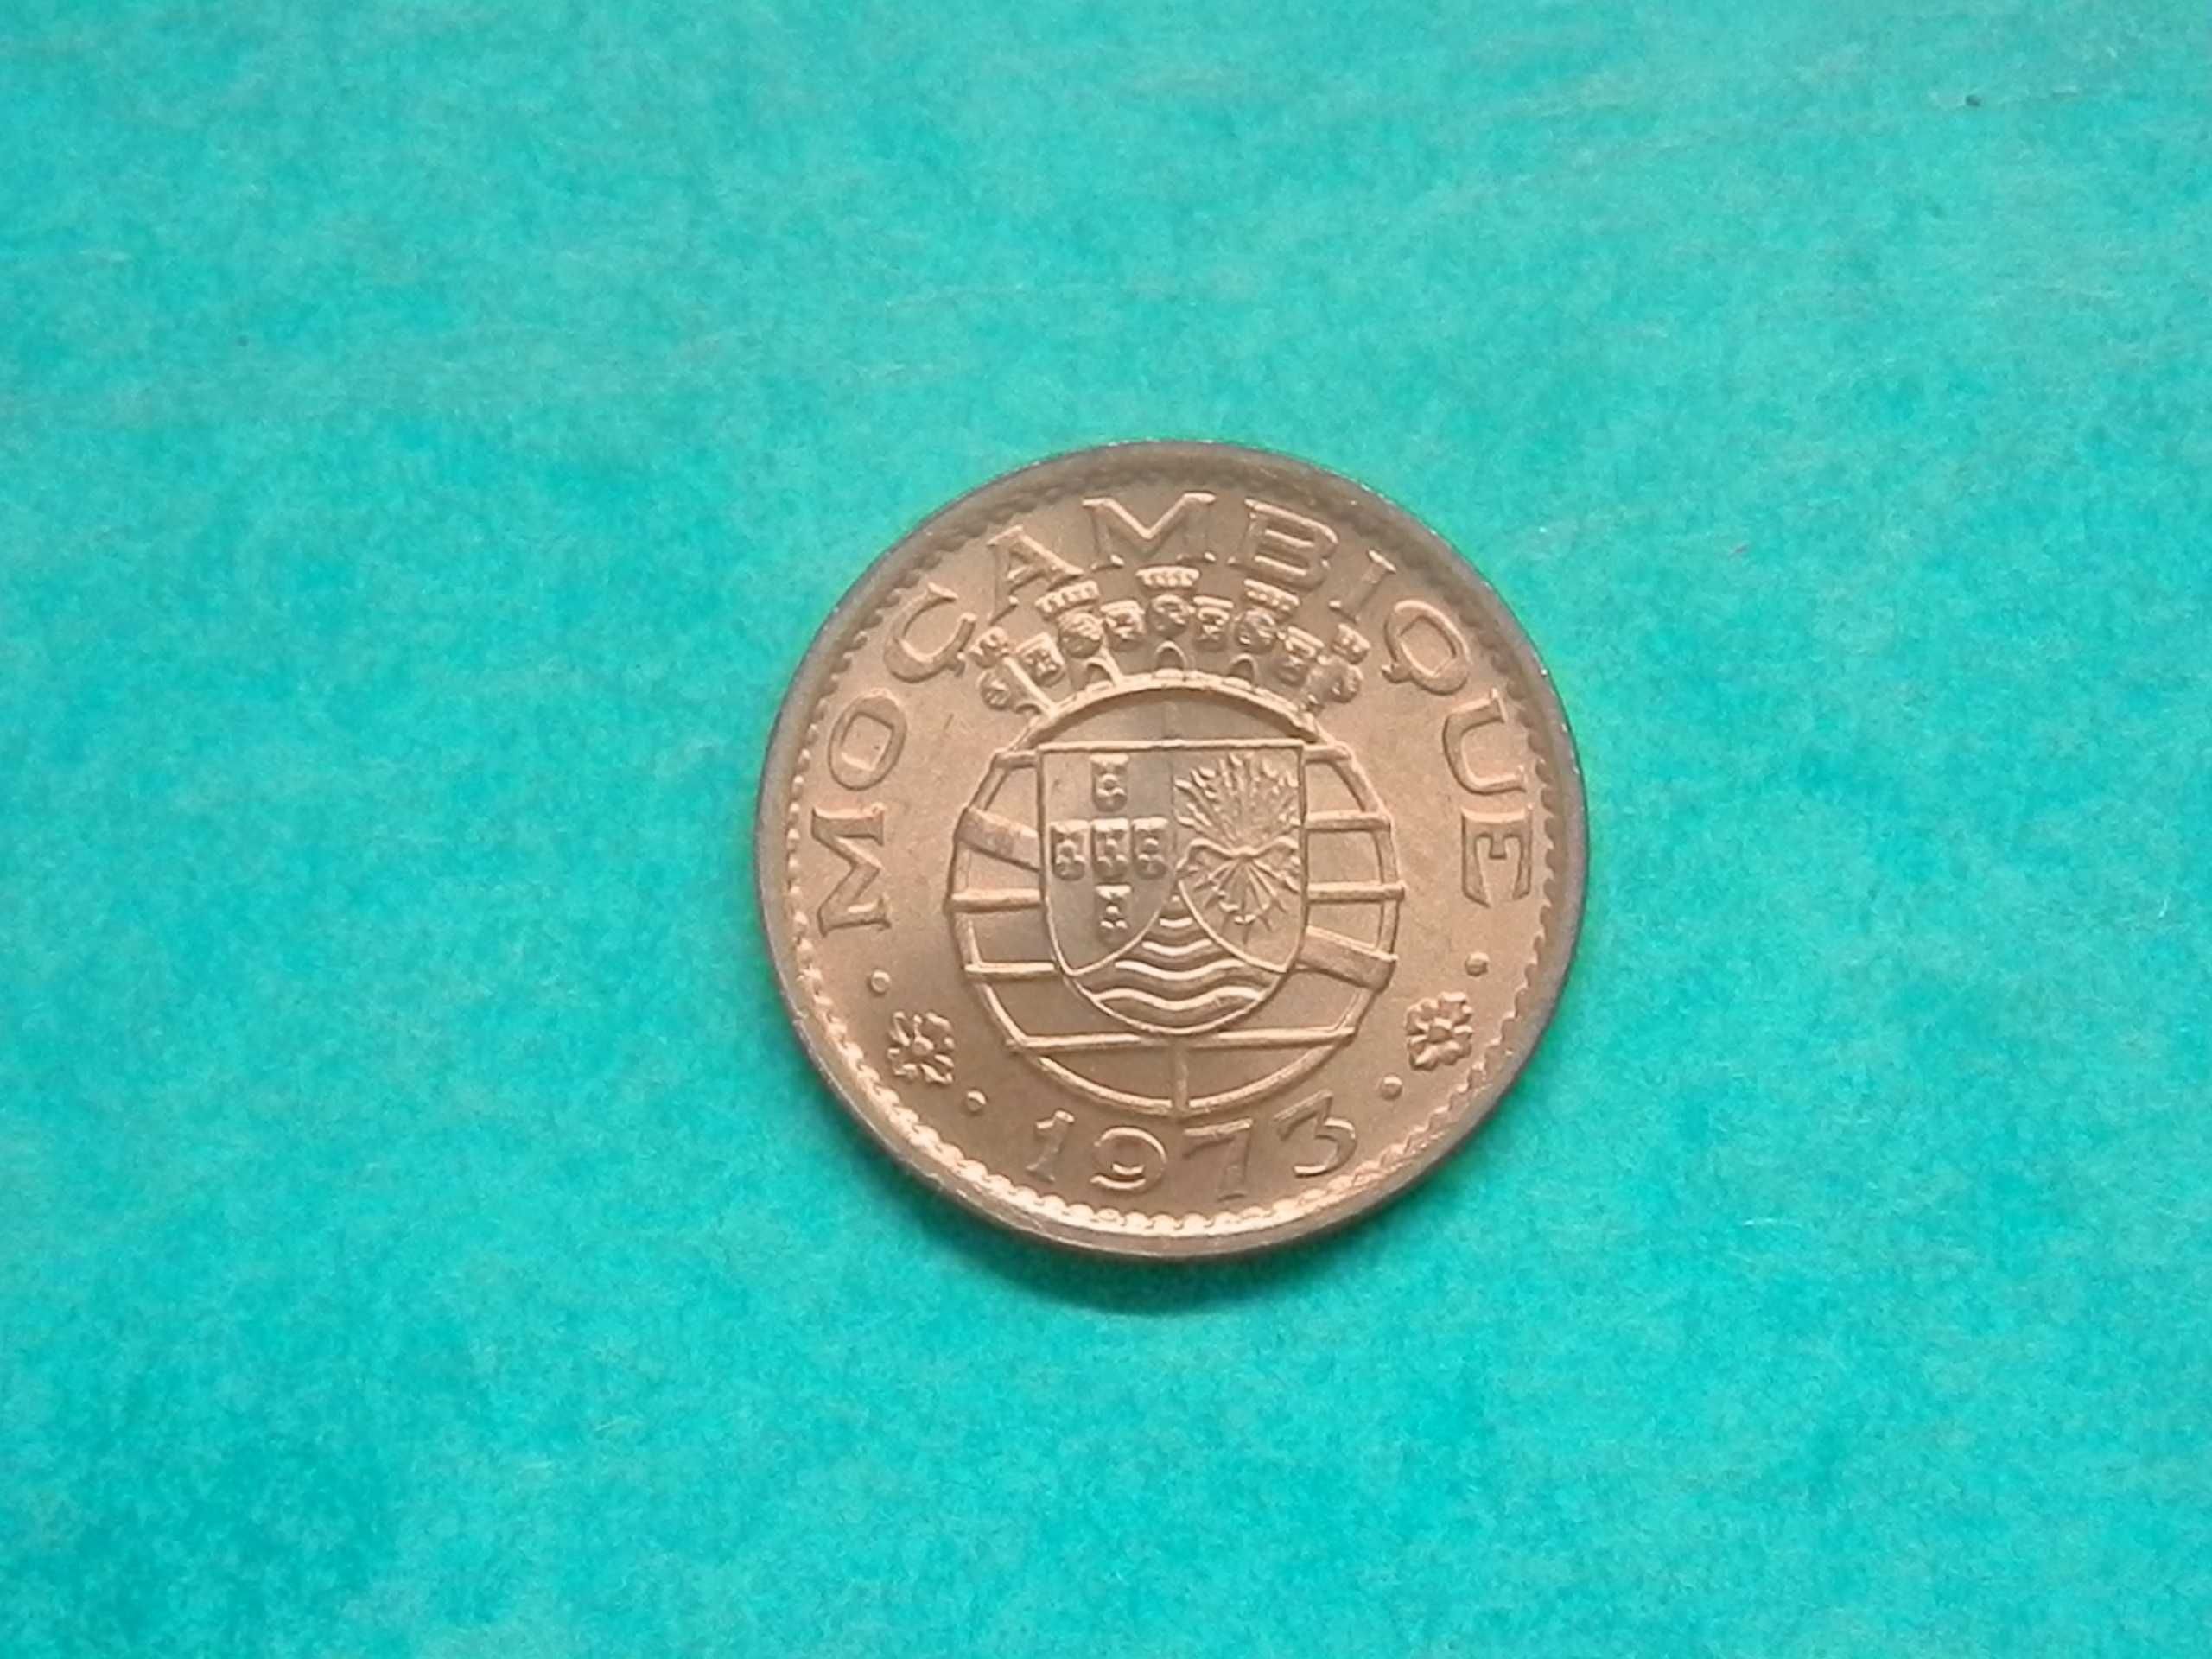 802 - Moçambique: 20 centavos 1973 bronze, por 2,00